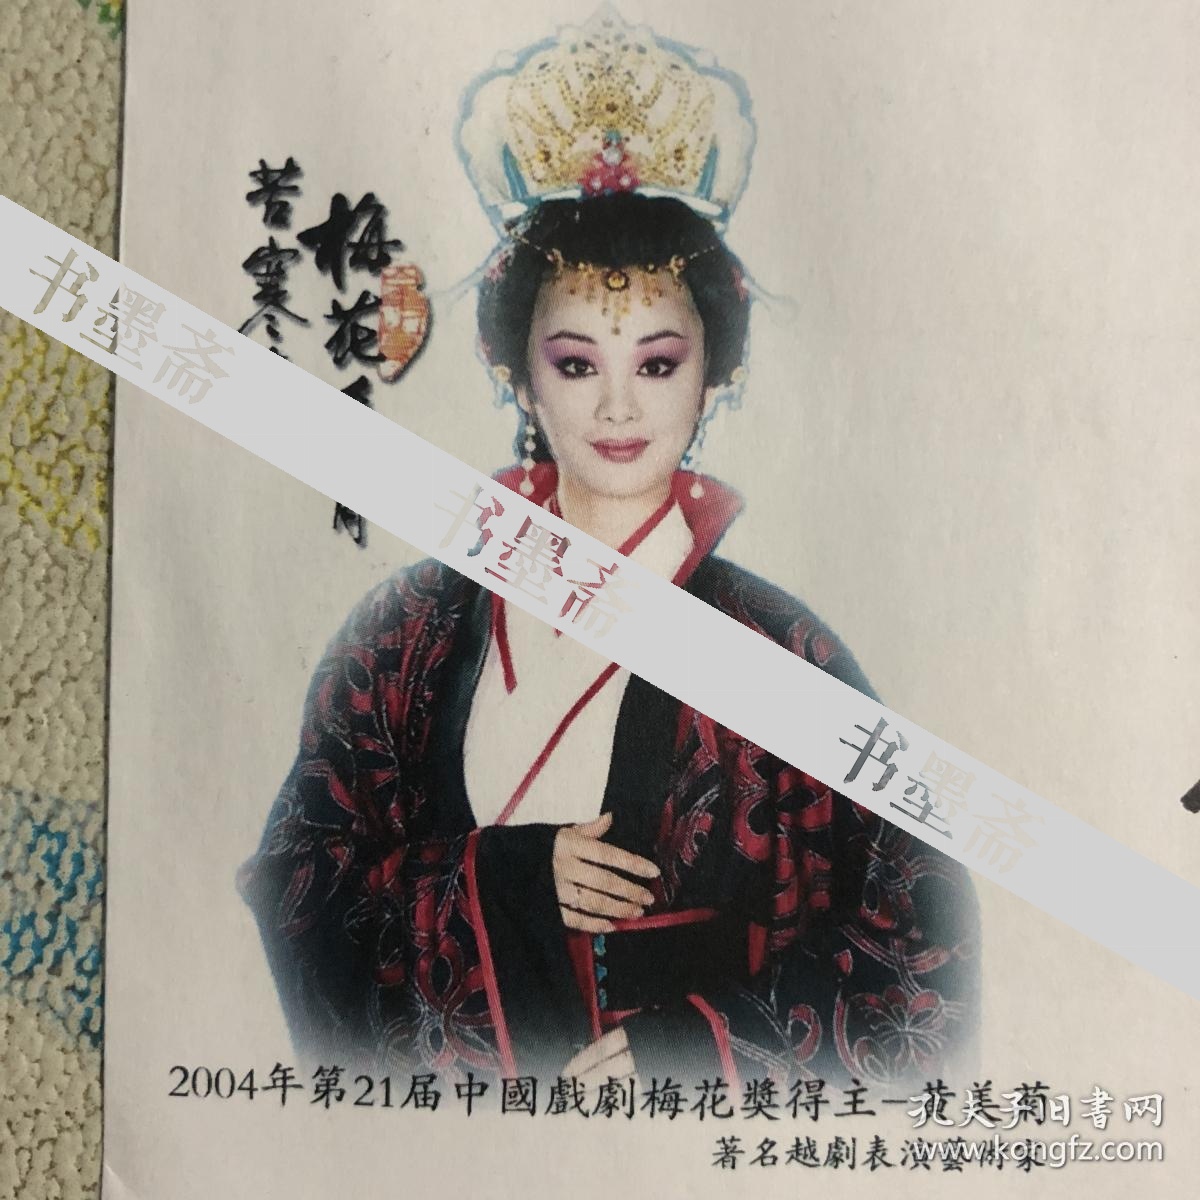 中国戏剧梅花奖得主 越剧表演艺术家黄美菊亲笔签名自制纪念封